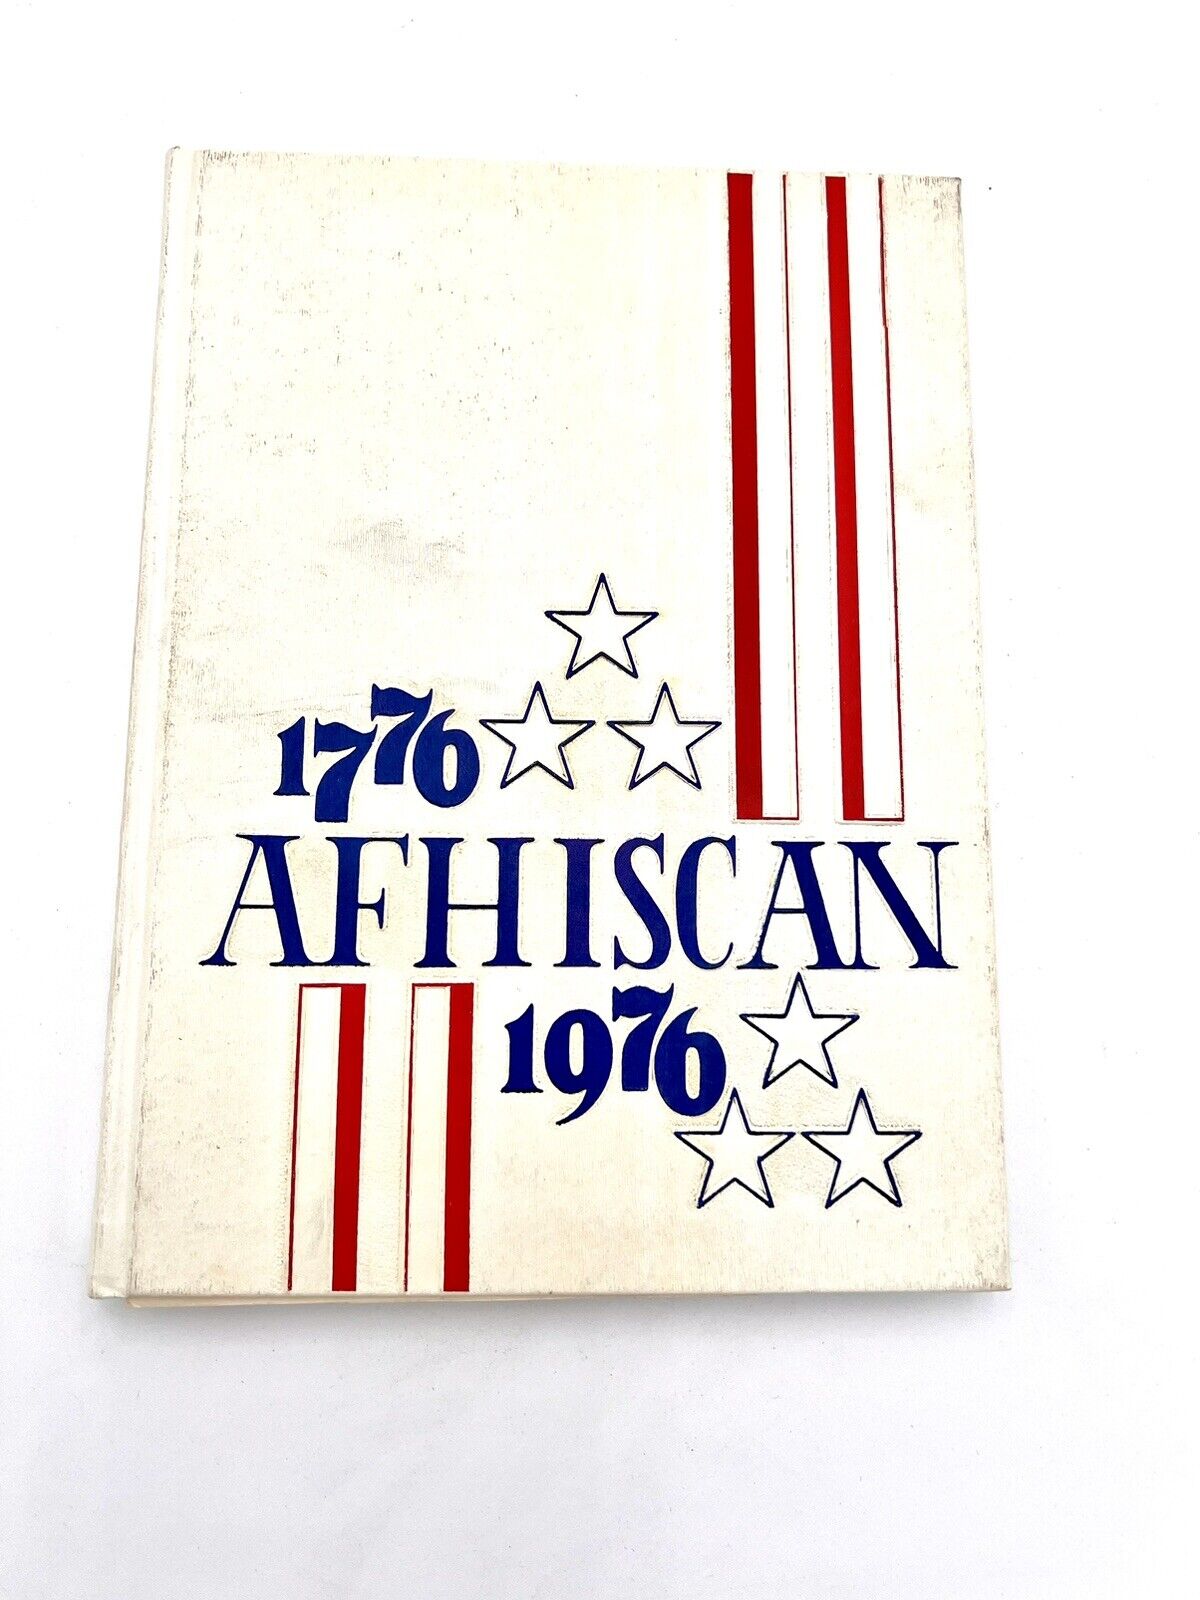 Affton High School Yearbook 1976 - St. Louis, Missouri (Afhiscan)